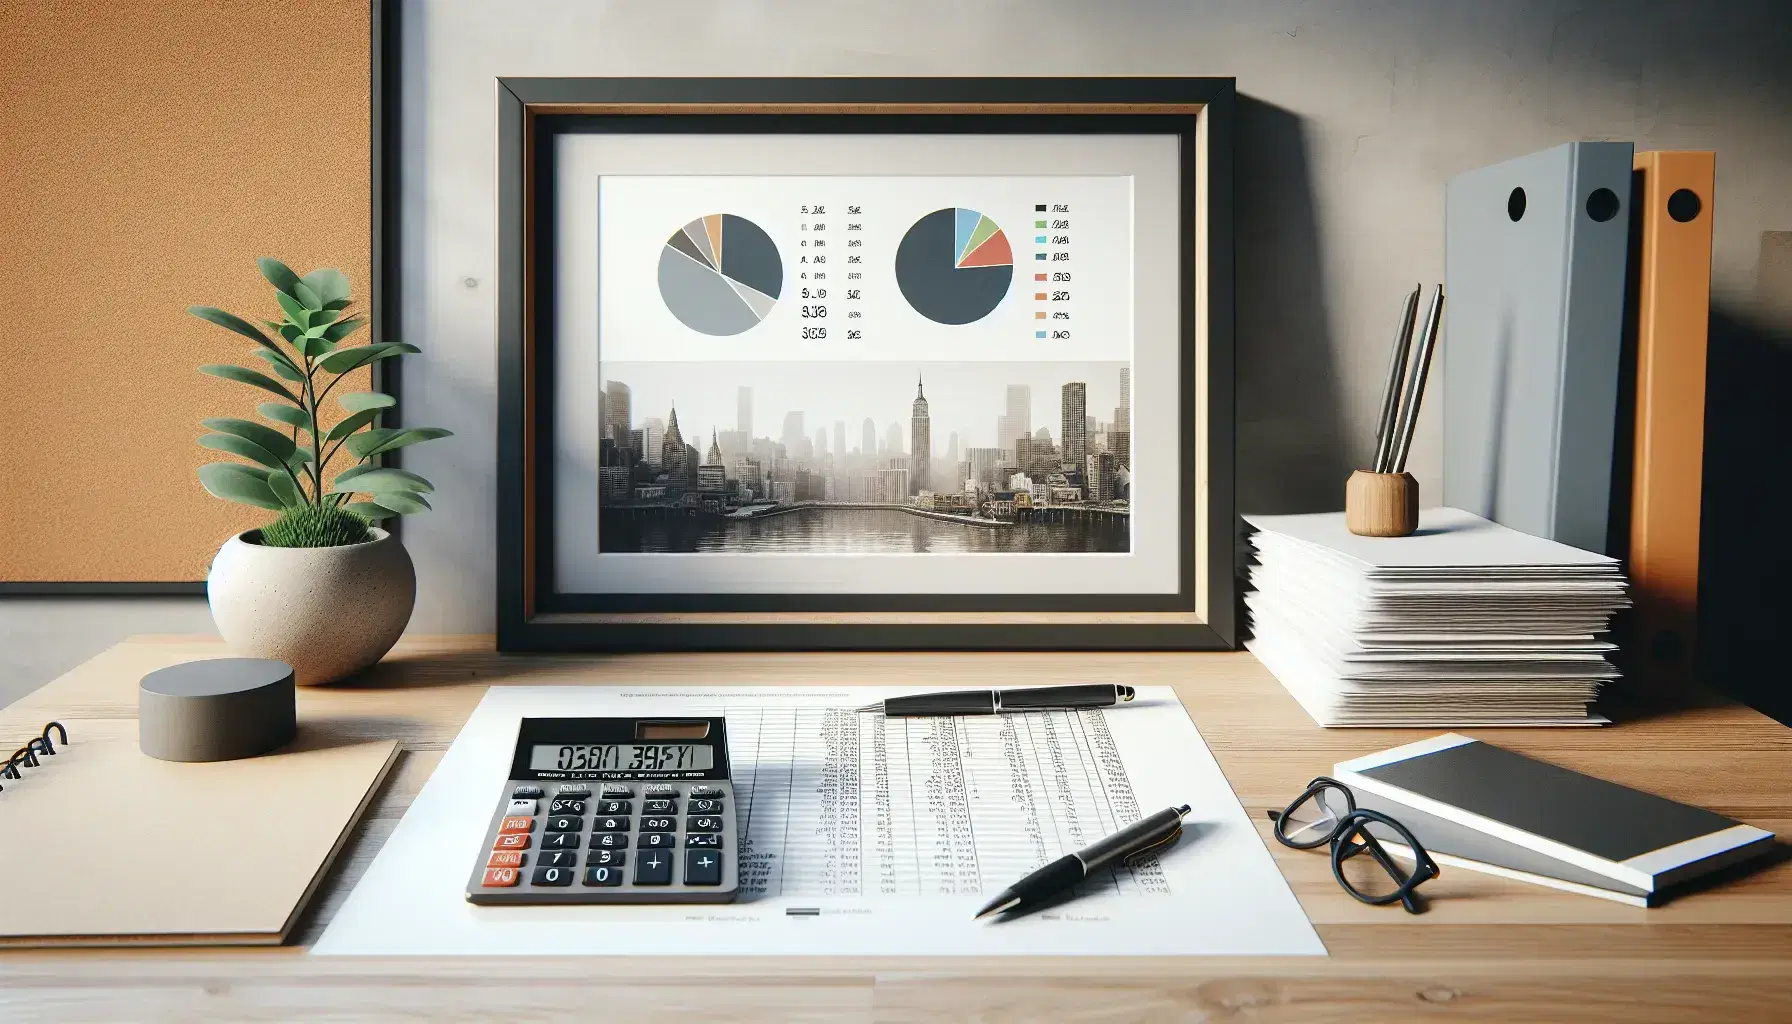 Escritorio de oficina con calculadora gris apagada, papel con gráfico de pastel, hojas blancas, bolígrafo azul y marco con foto en blanco y negro de ciudad.